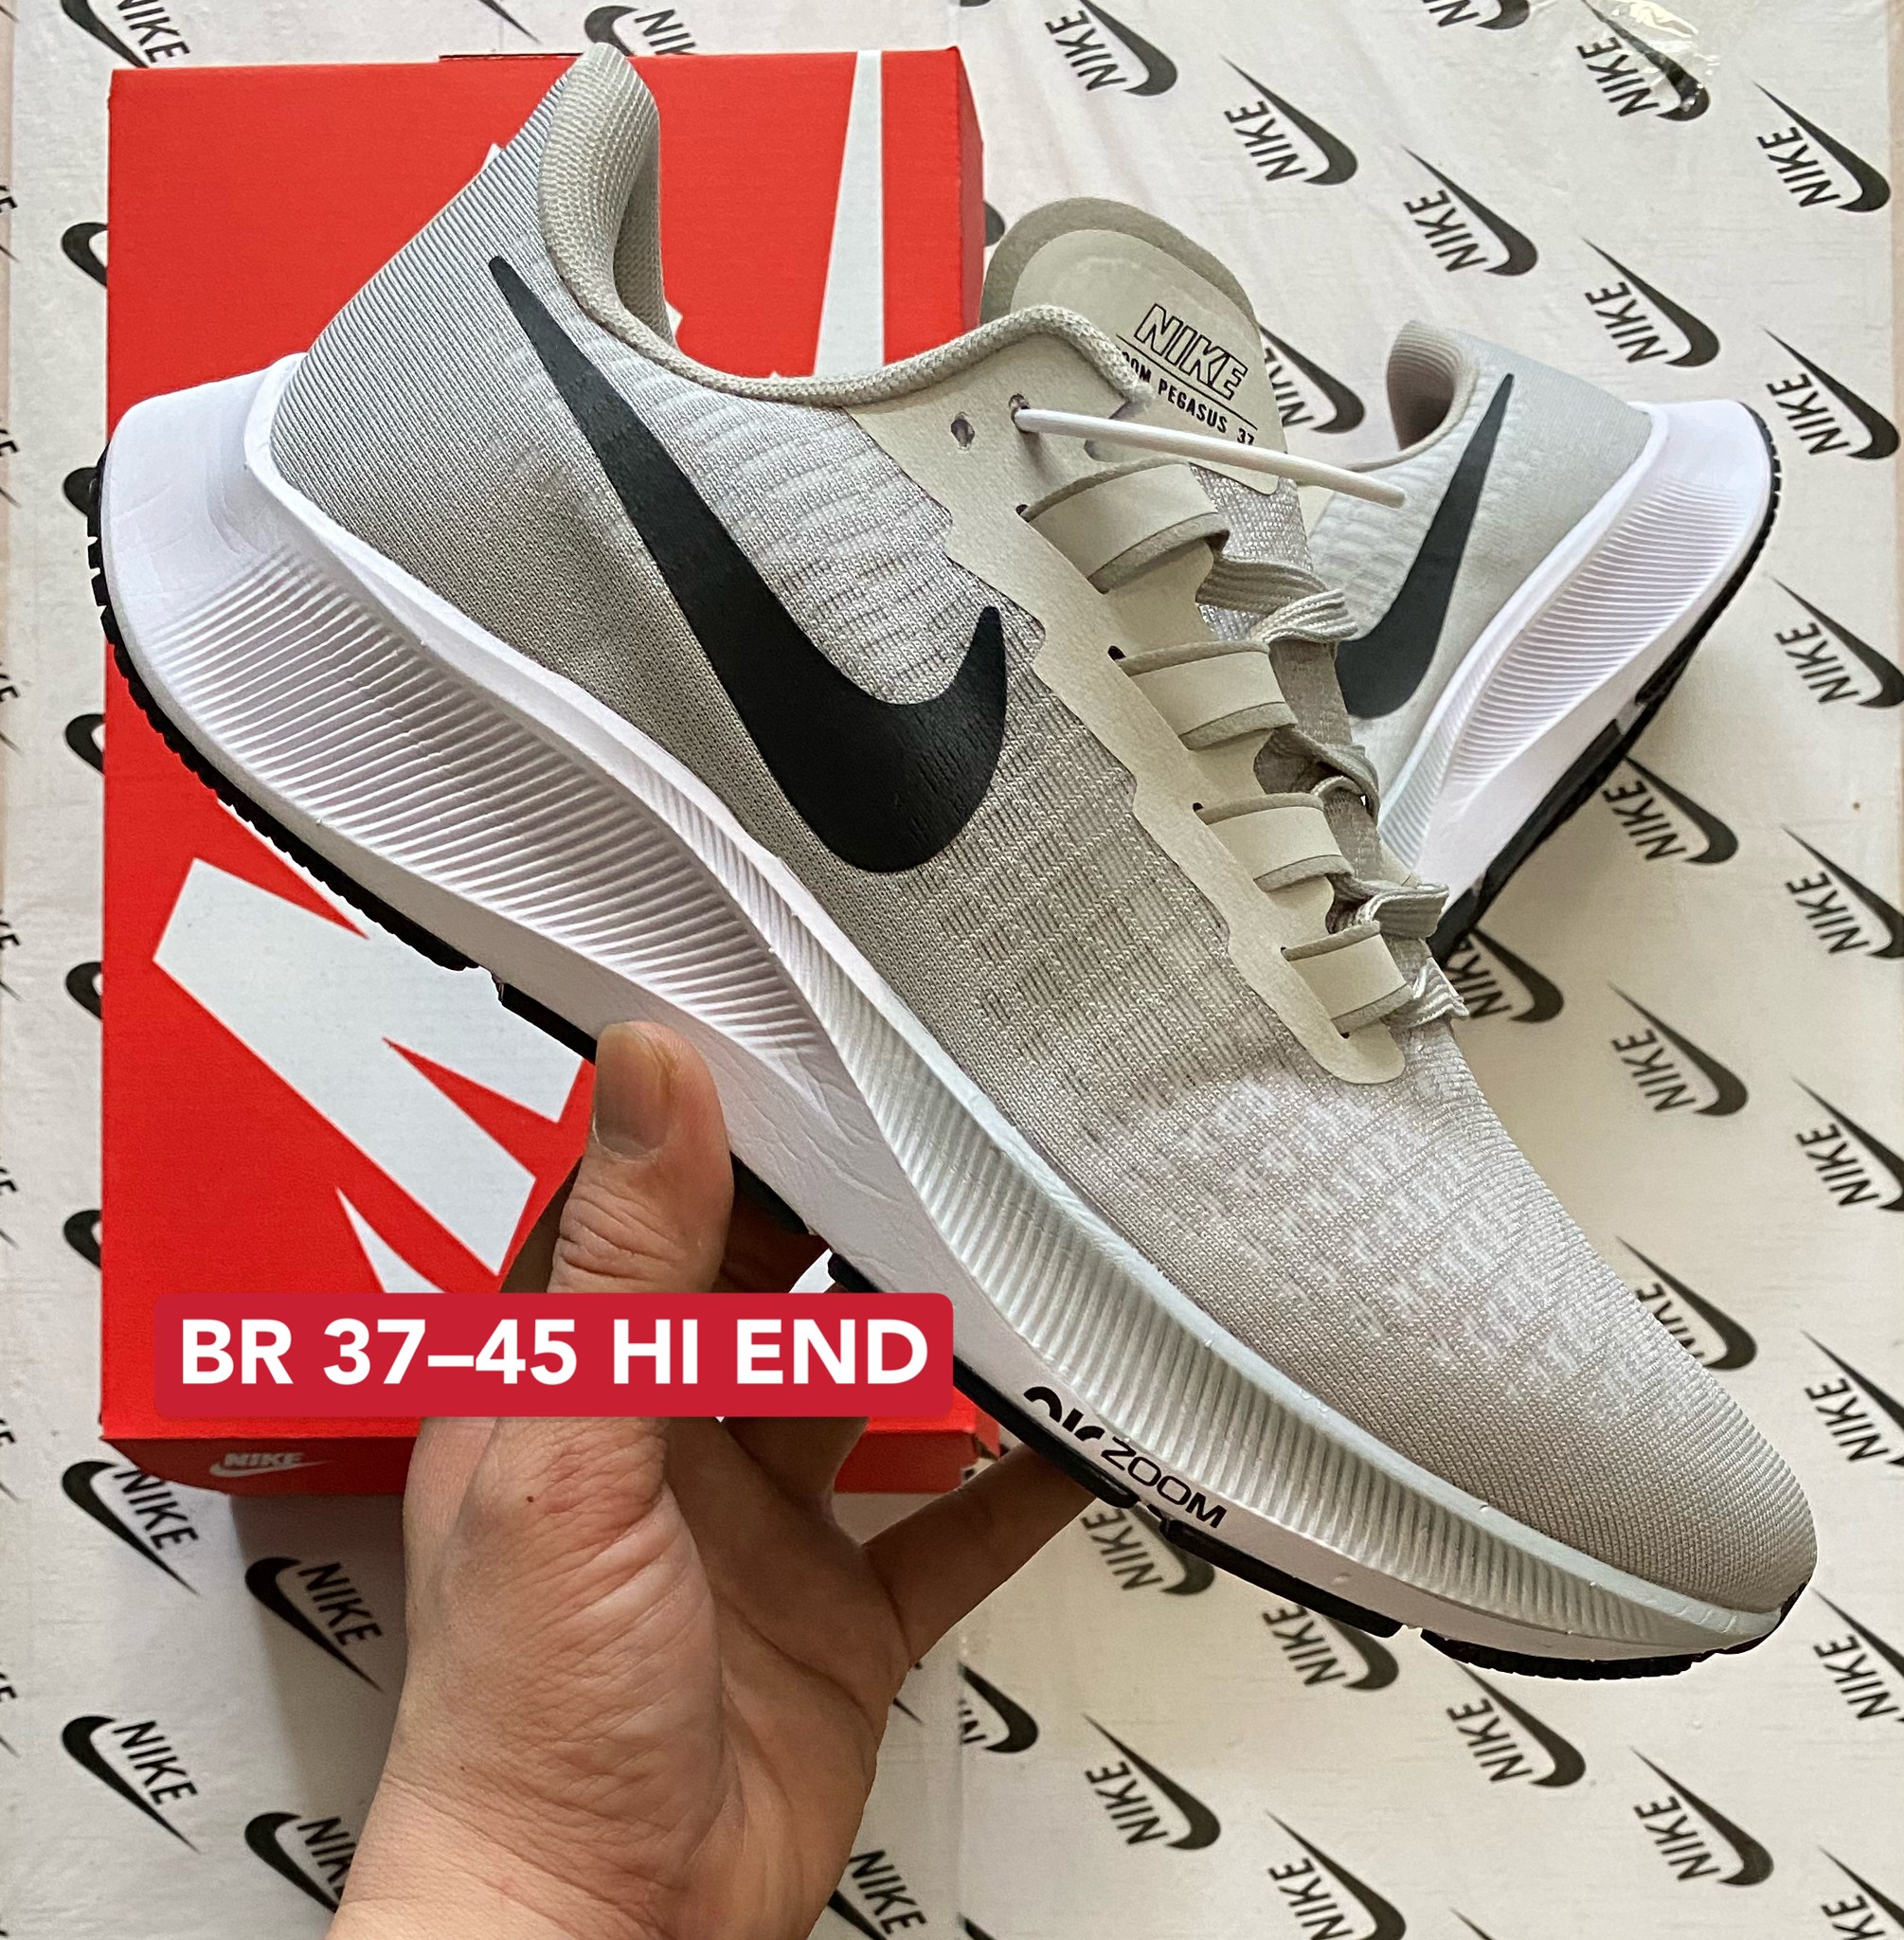 【SALE】✨รองเท้ารองเท้าวิ่งNikee Air Zoom Pegasus 37 - Size36-45 รุ่นใหม่ NEW Color รองเท้ากีฬา สินค้าพร้อมกล่อง ตรงปก100%